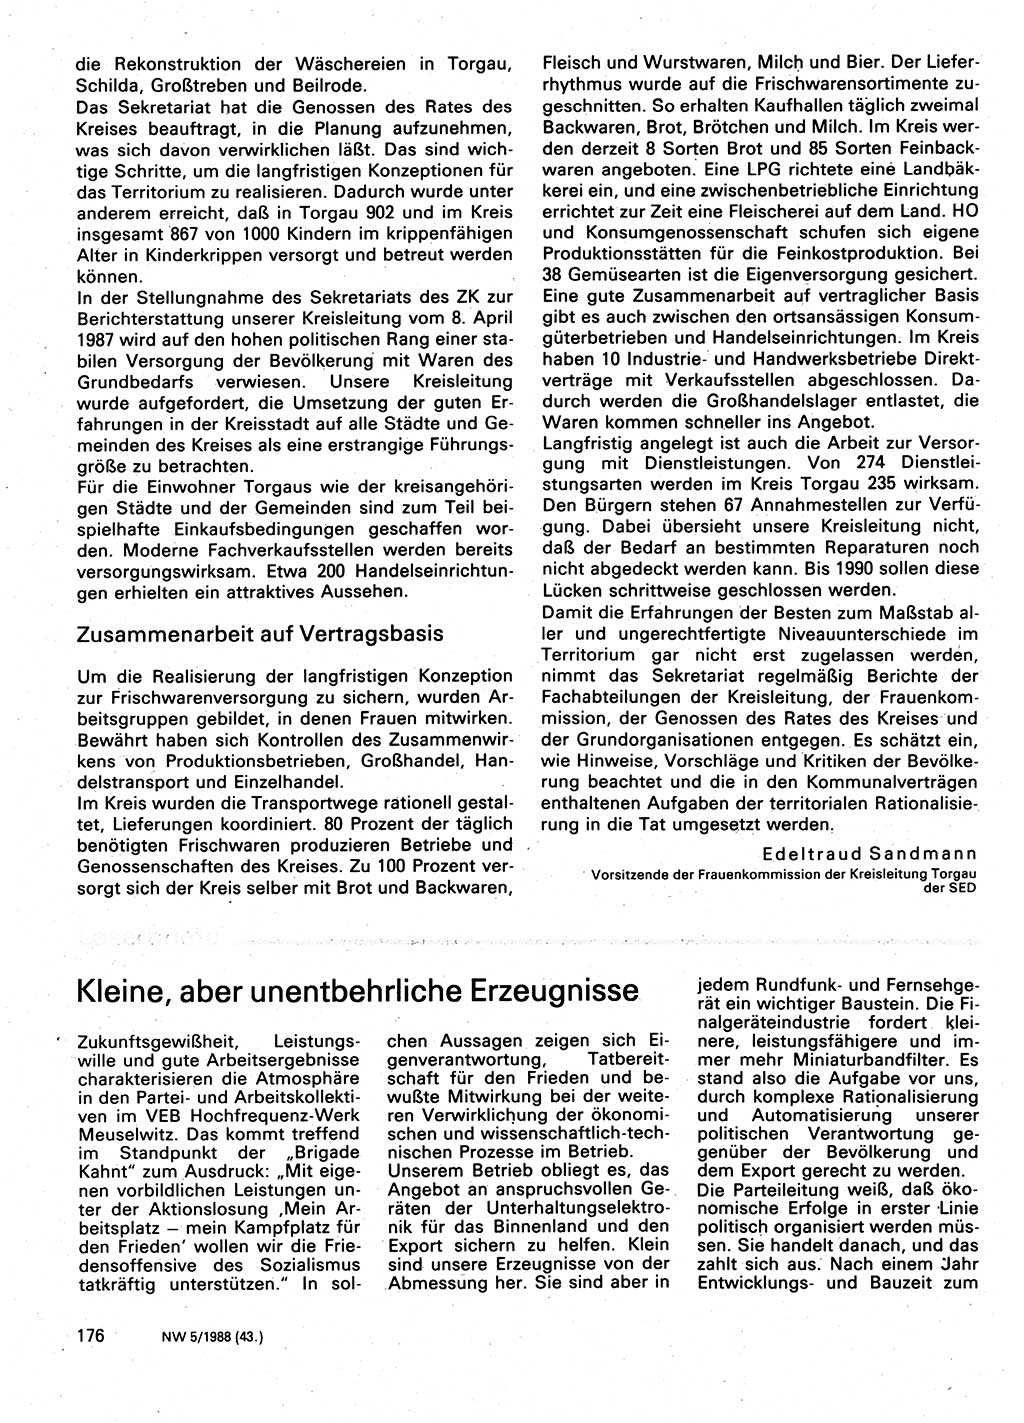 Neuer Weg (NW), Organ des Zentralkomitees (ZK) der SED (Sozialistische Einheitspartei Deutschlands) für Fragen des Parteilebens, 43. Jahrgang [Deutsche Demokratische Republik (DDR)] 1988, Seite 176 (NW ZK SED DDR 1988, S. 176)